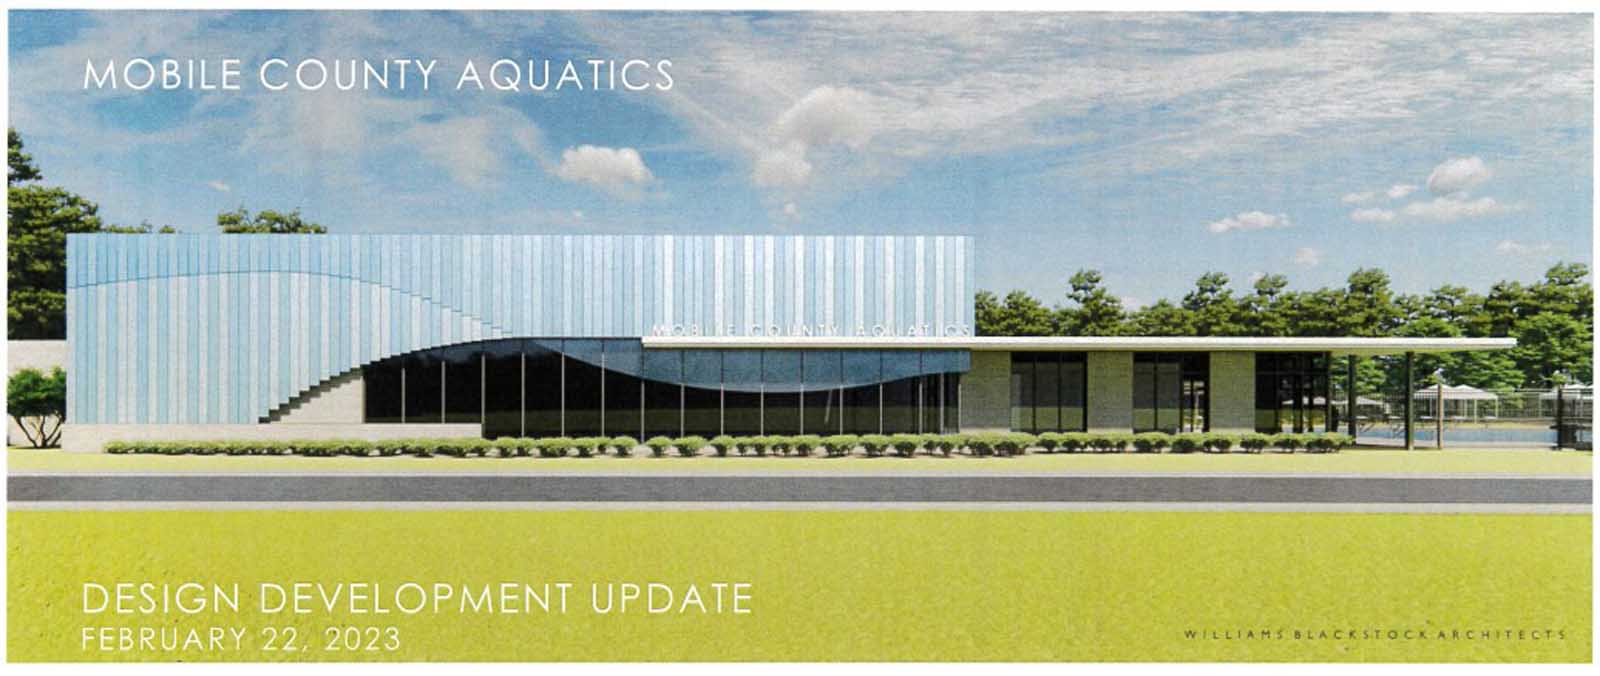 Plans Revealed For Mobile County Aquatics Center